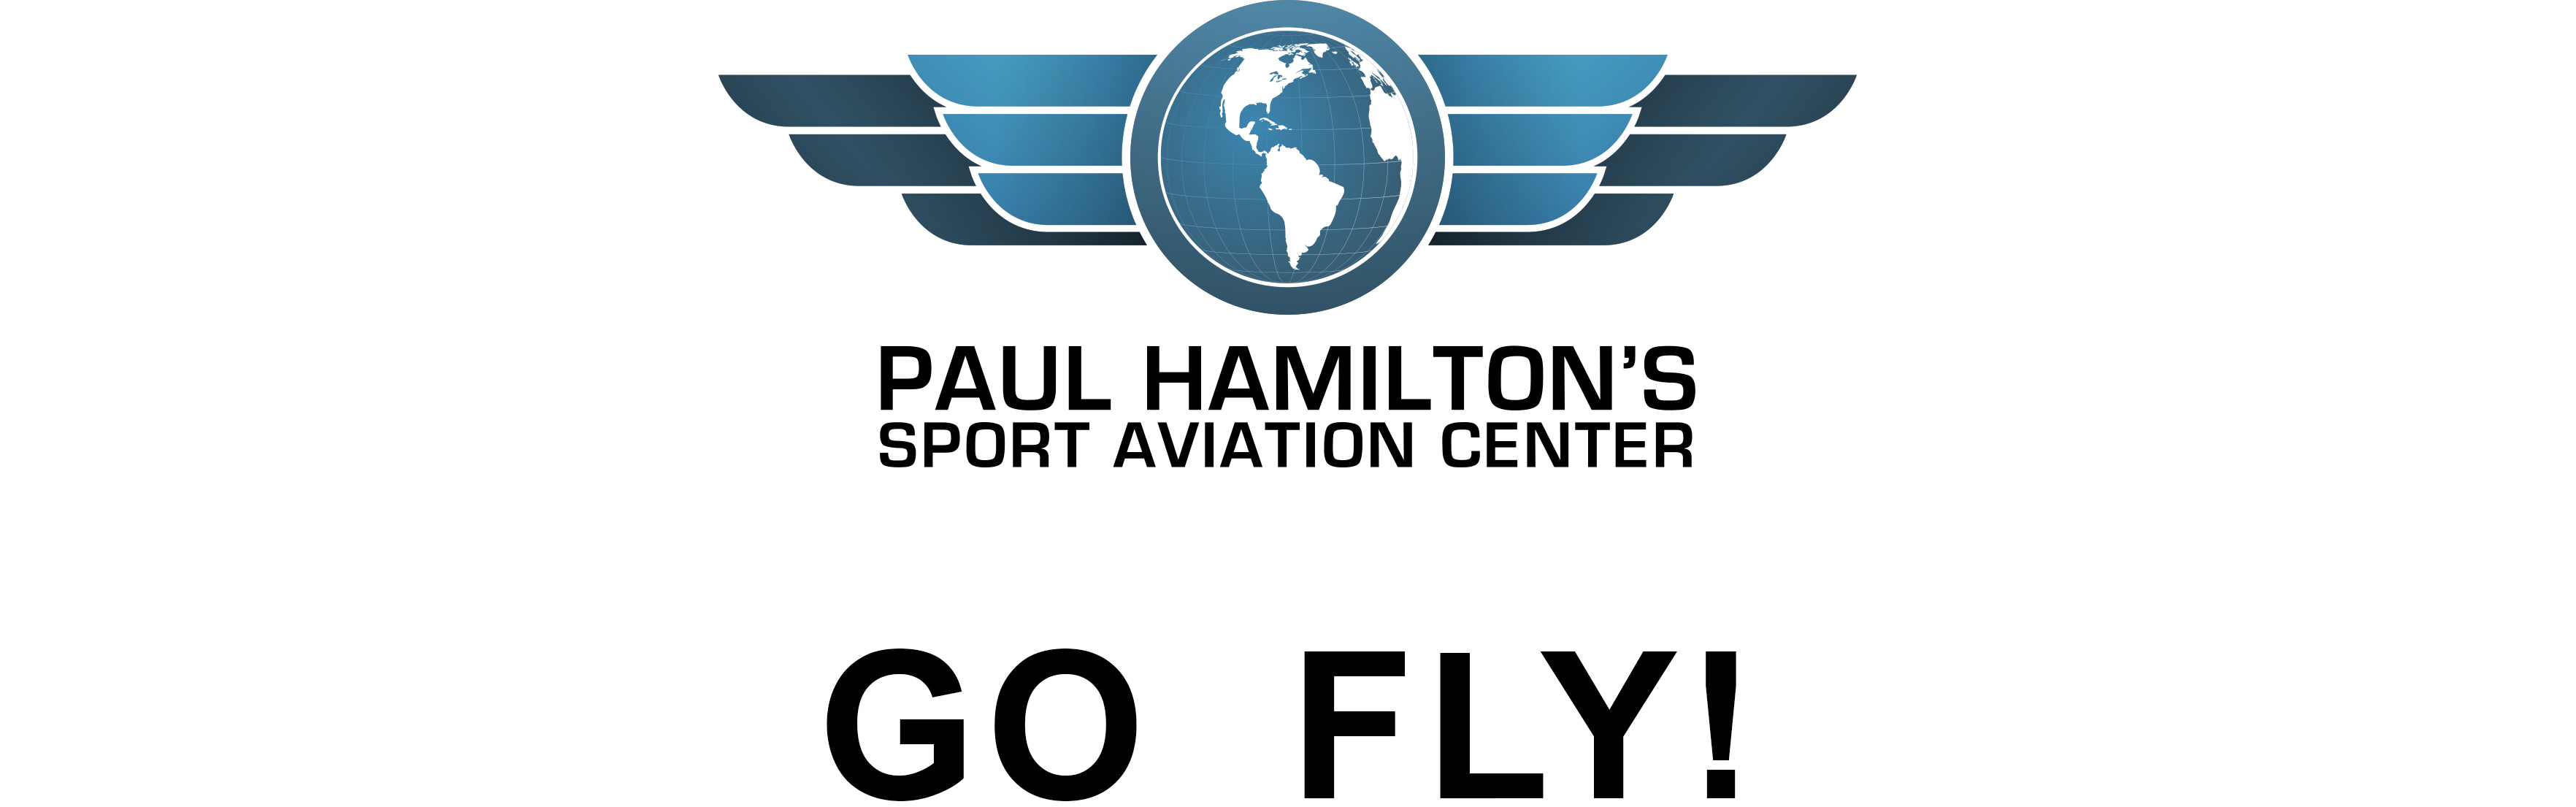 Go Fly! | Paul Hamilton's Sport Aviation Center LLC